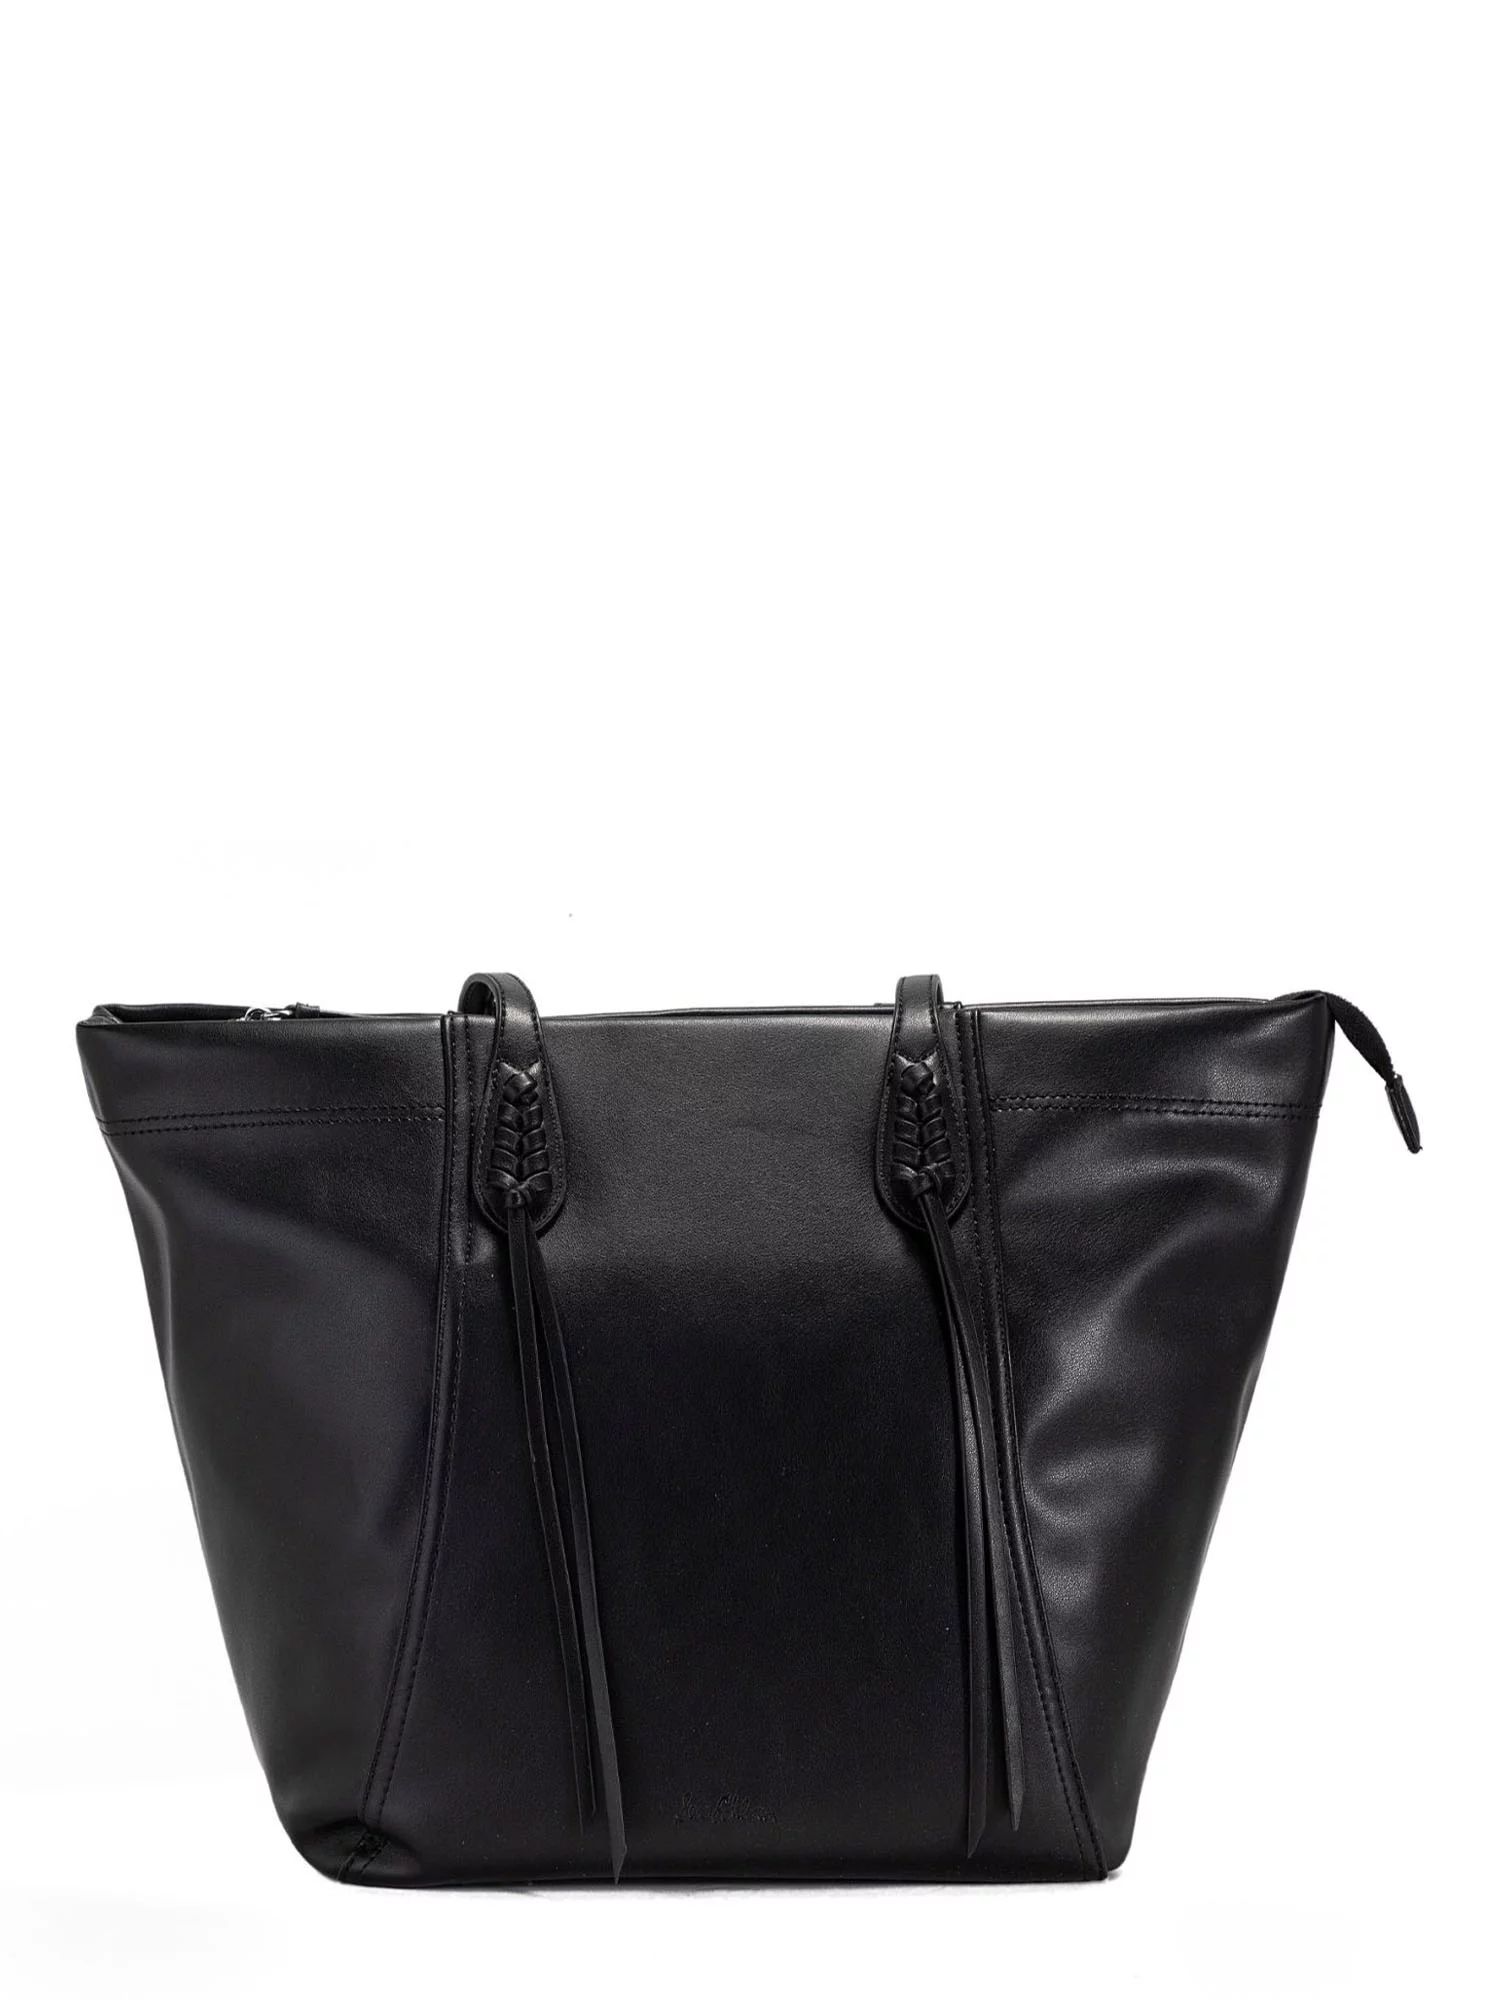 Sam Edelman Women's Sienna Tote Handbag Black | Walmart (US)